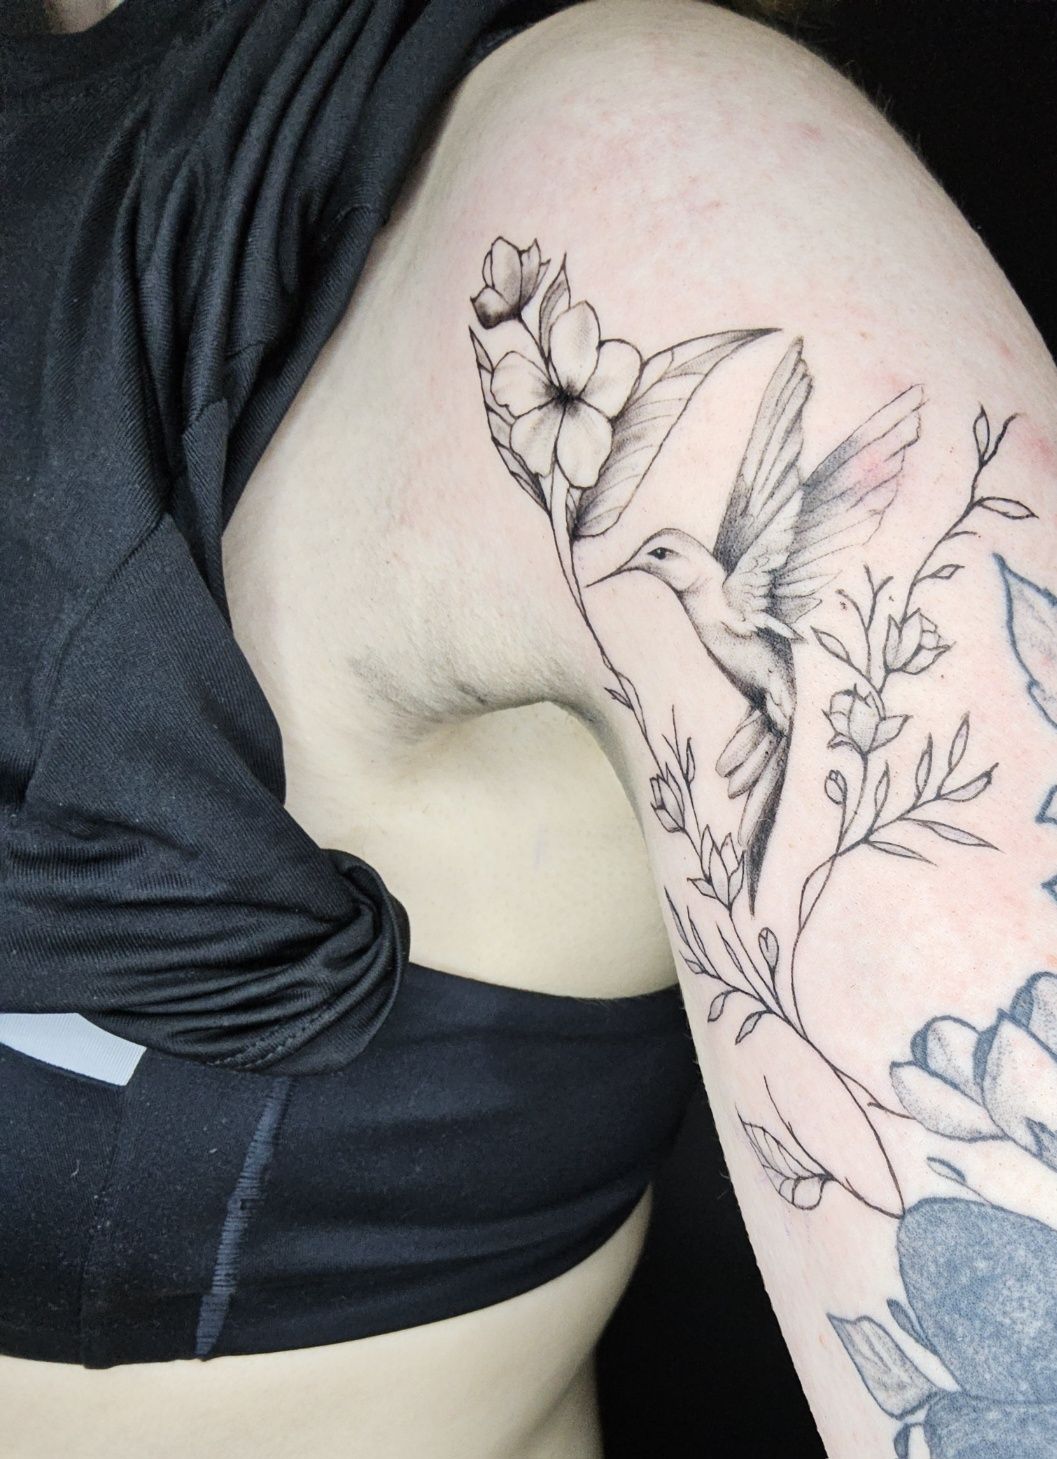 Tatuaż tattoo Poznań